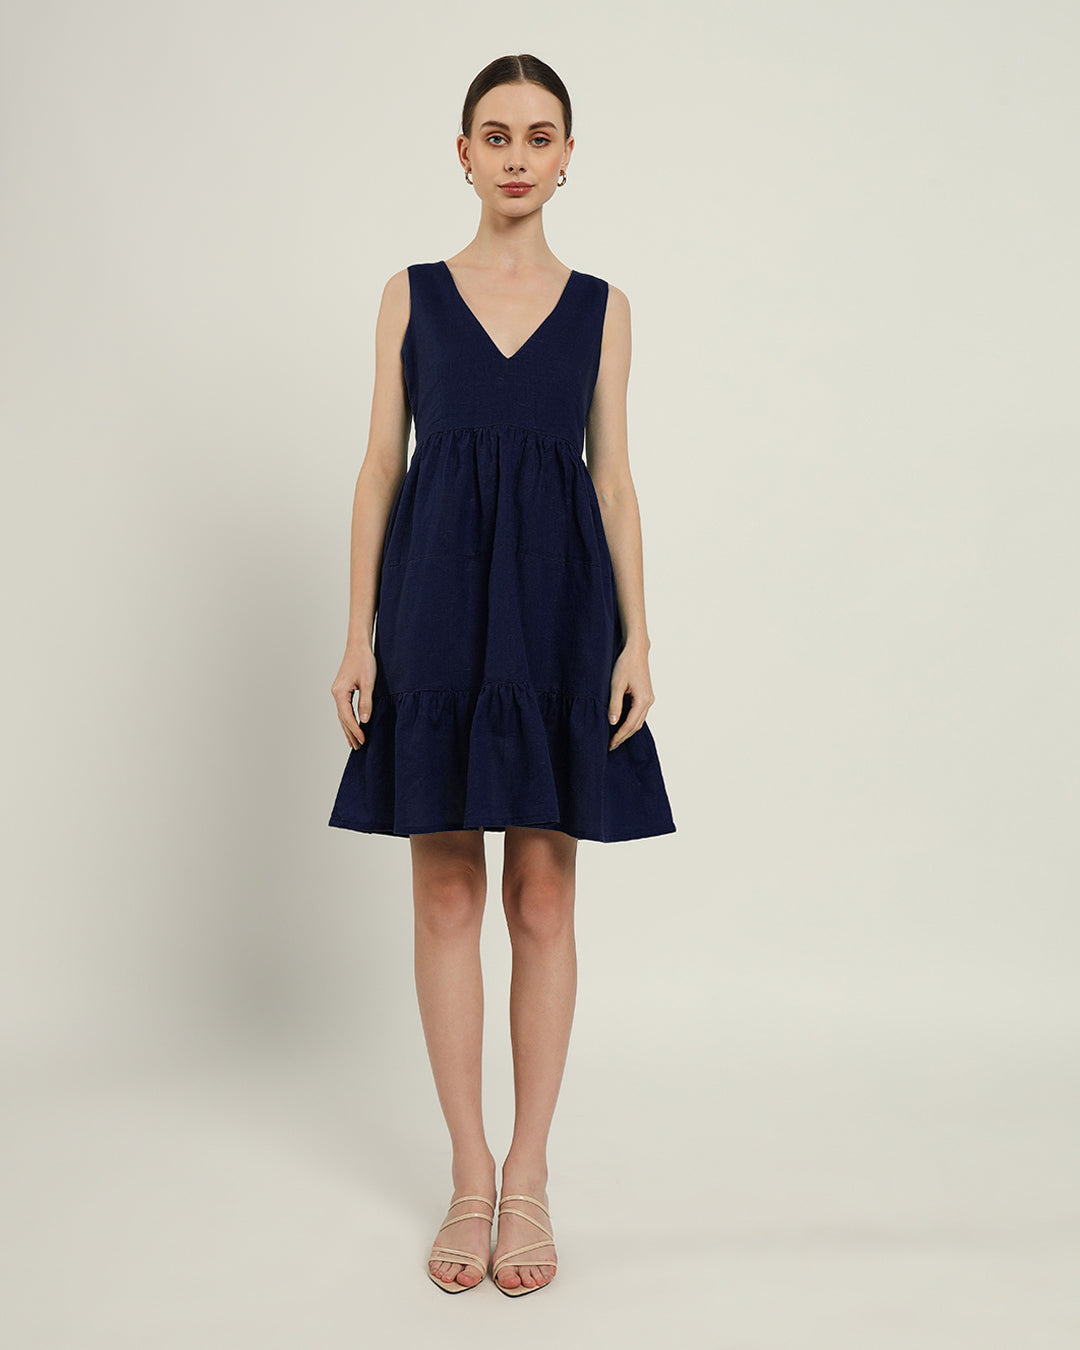 The Minsk Daisy Midnight Blue Linen Dress